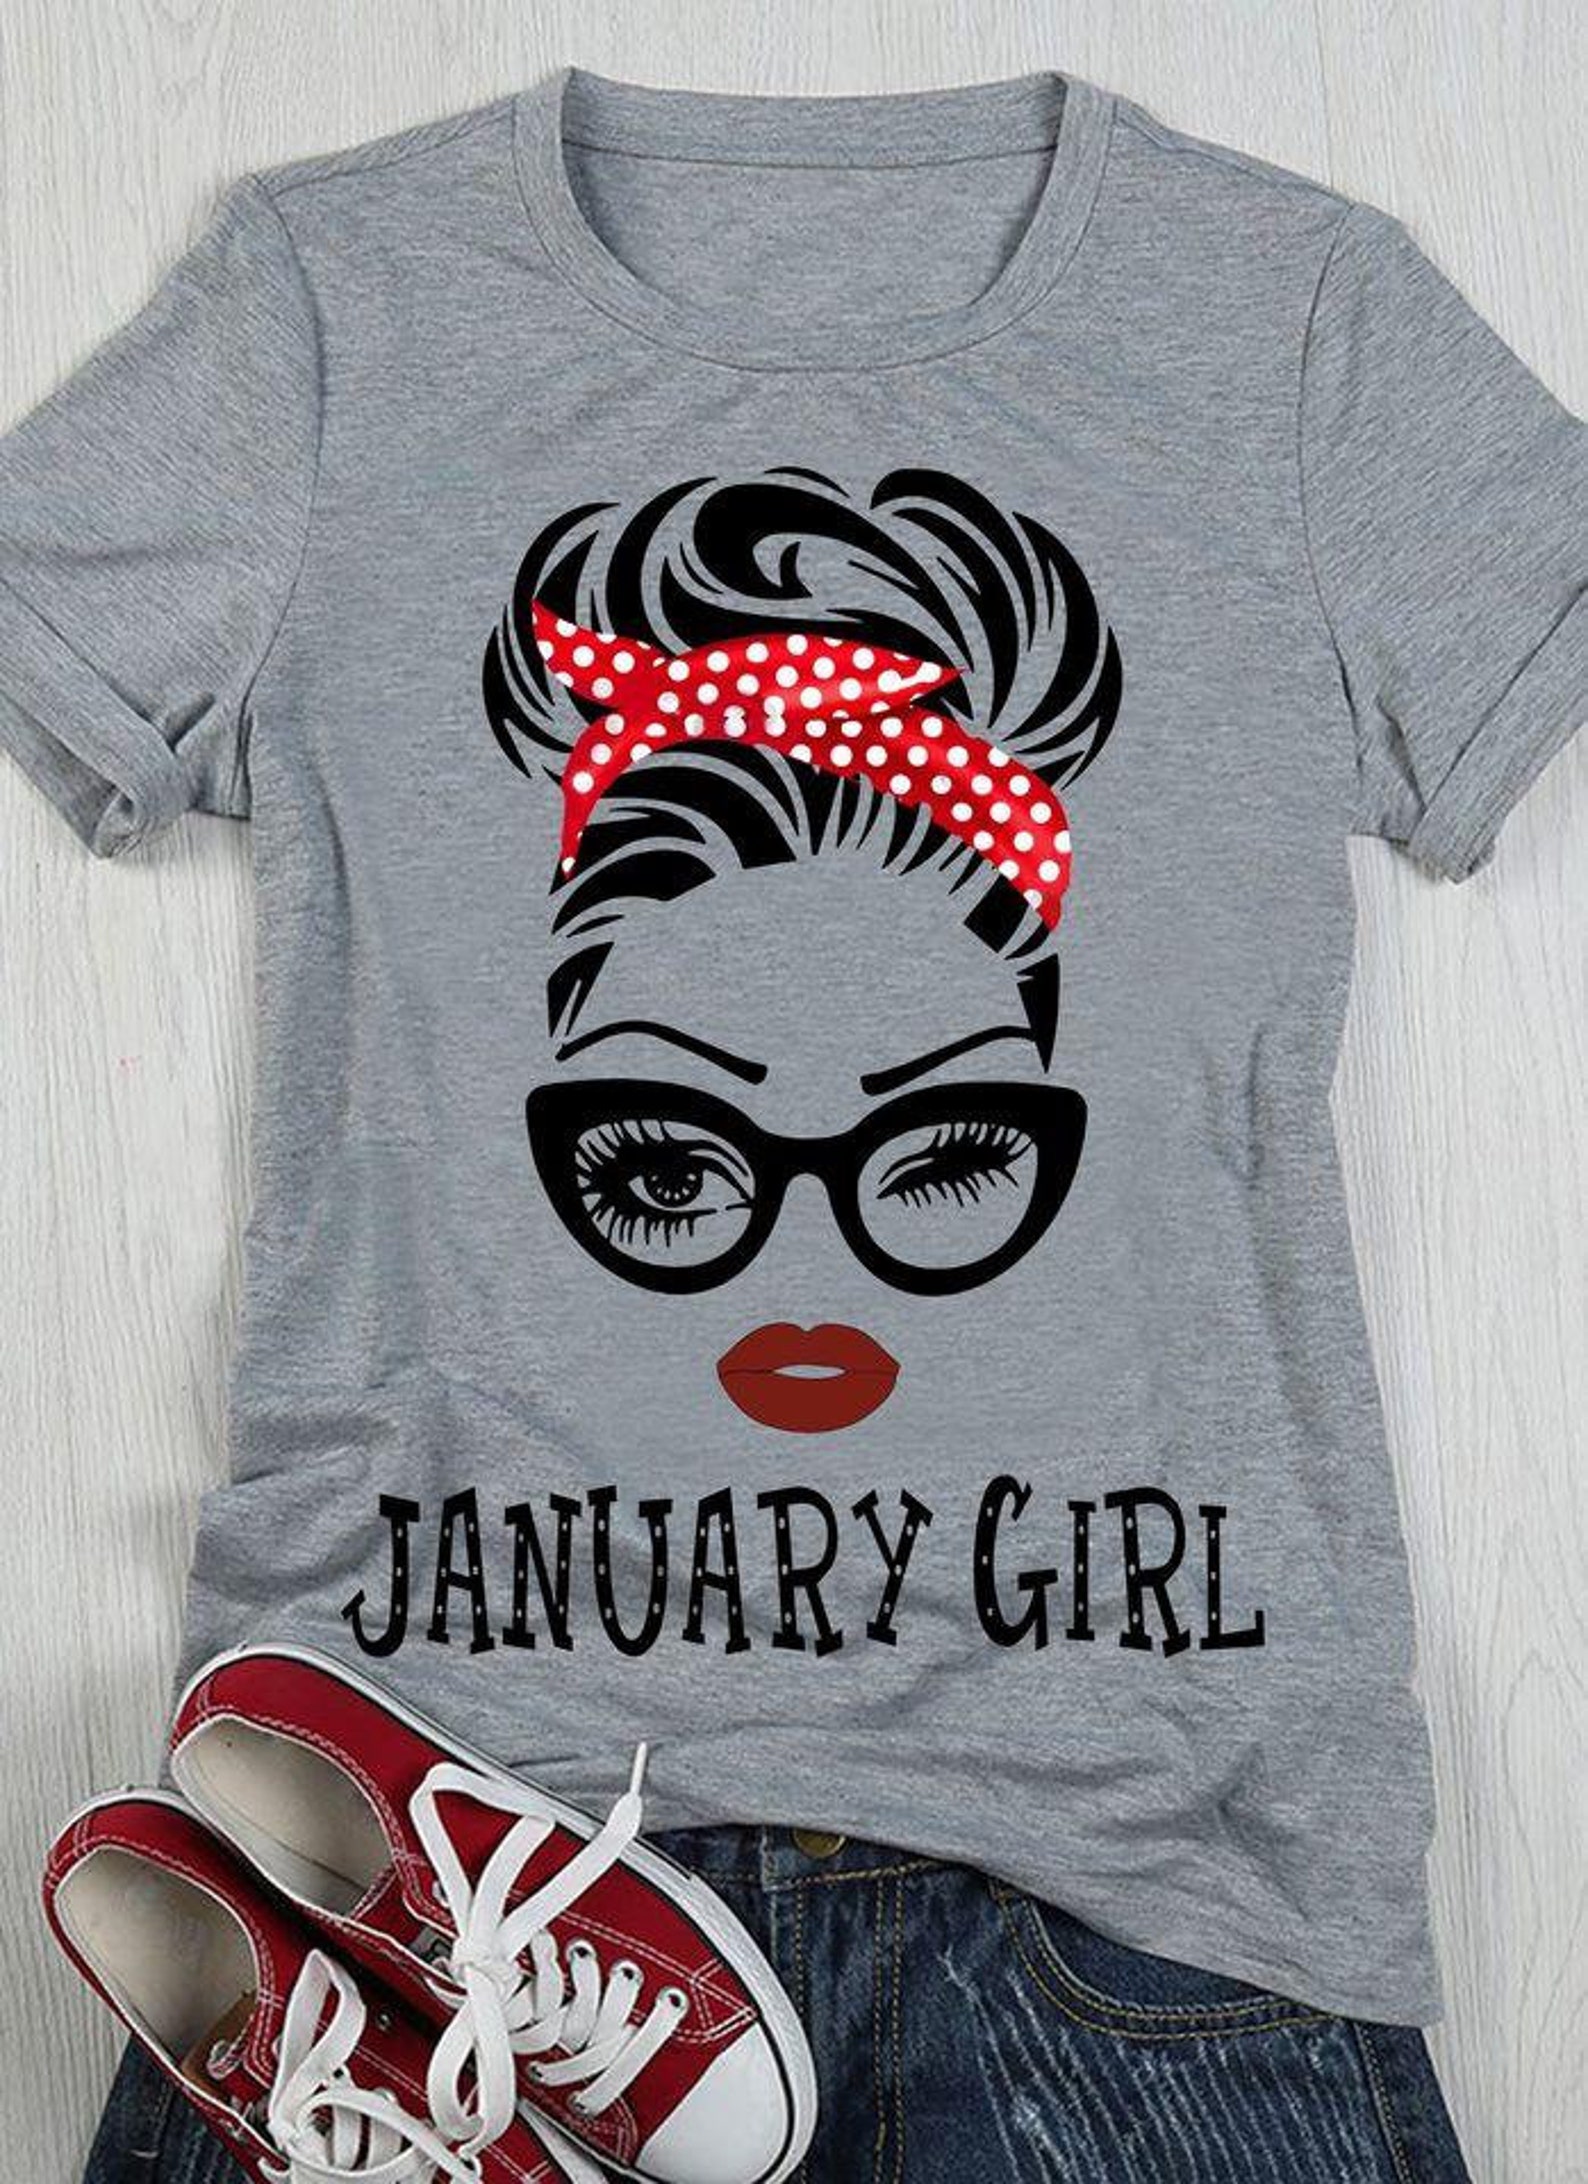 January Girl T-Shirt January Girl Happy Birthday T-Shirt | Etsy